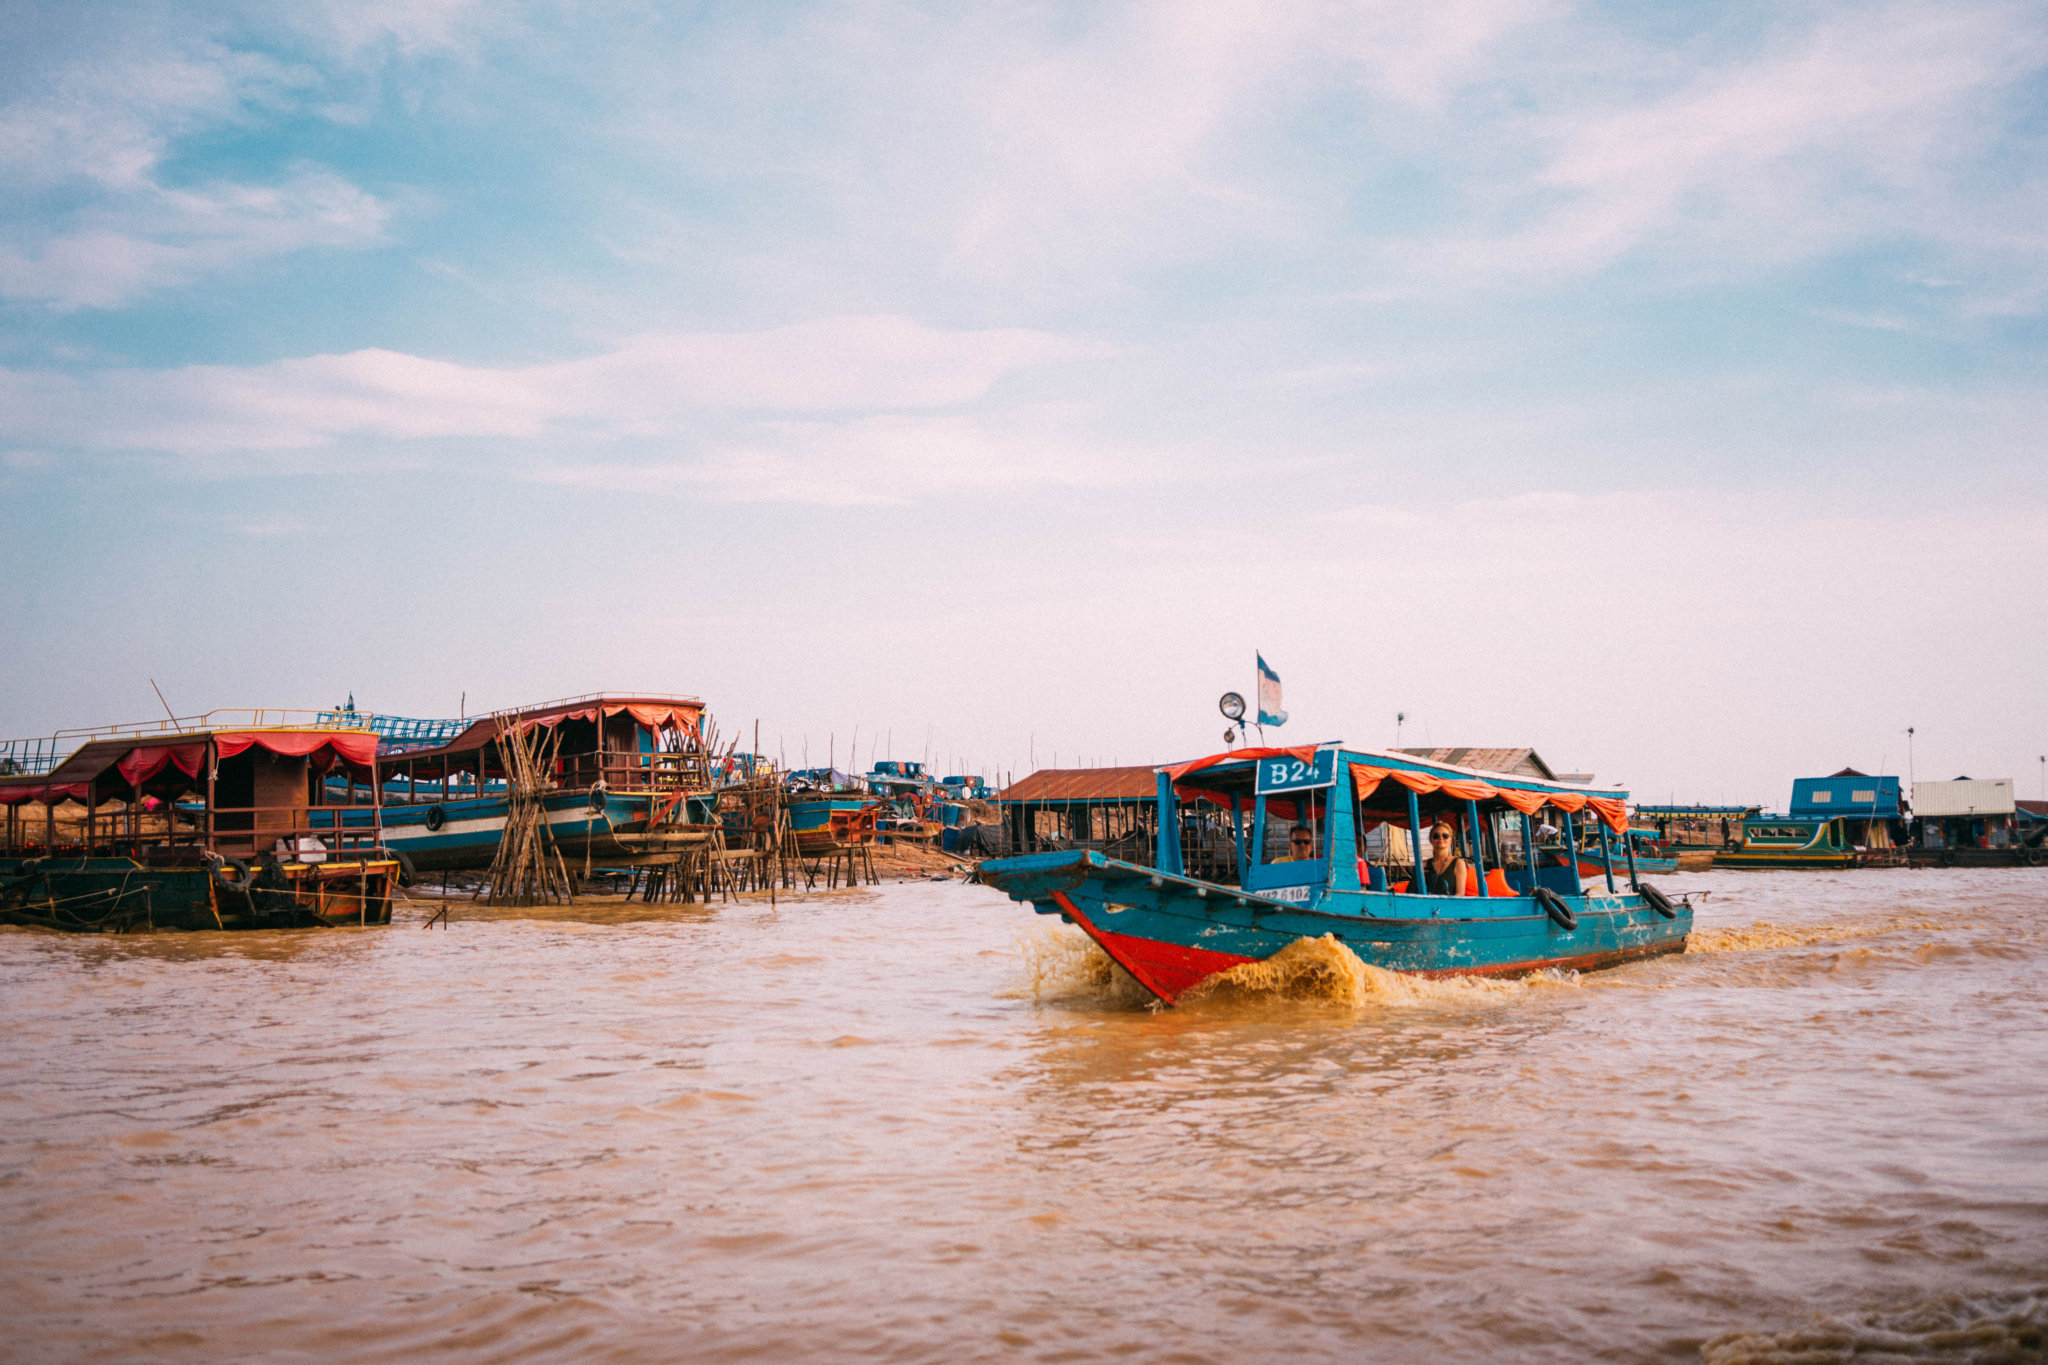 Du lịch Siem Reap tự túc_Tonle Sap_triphunter_